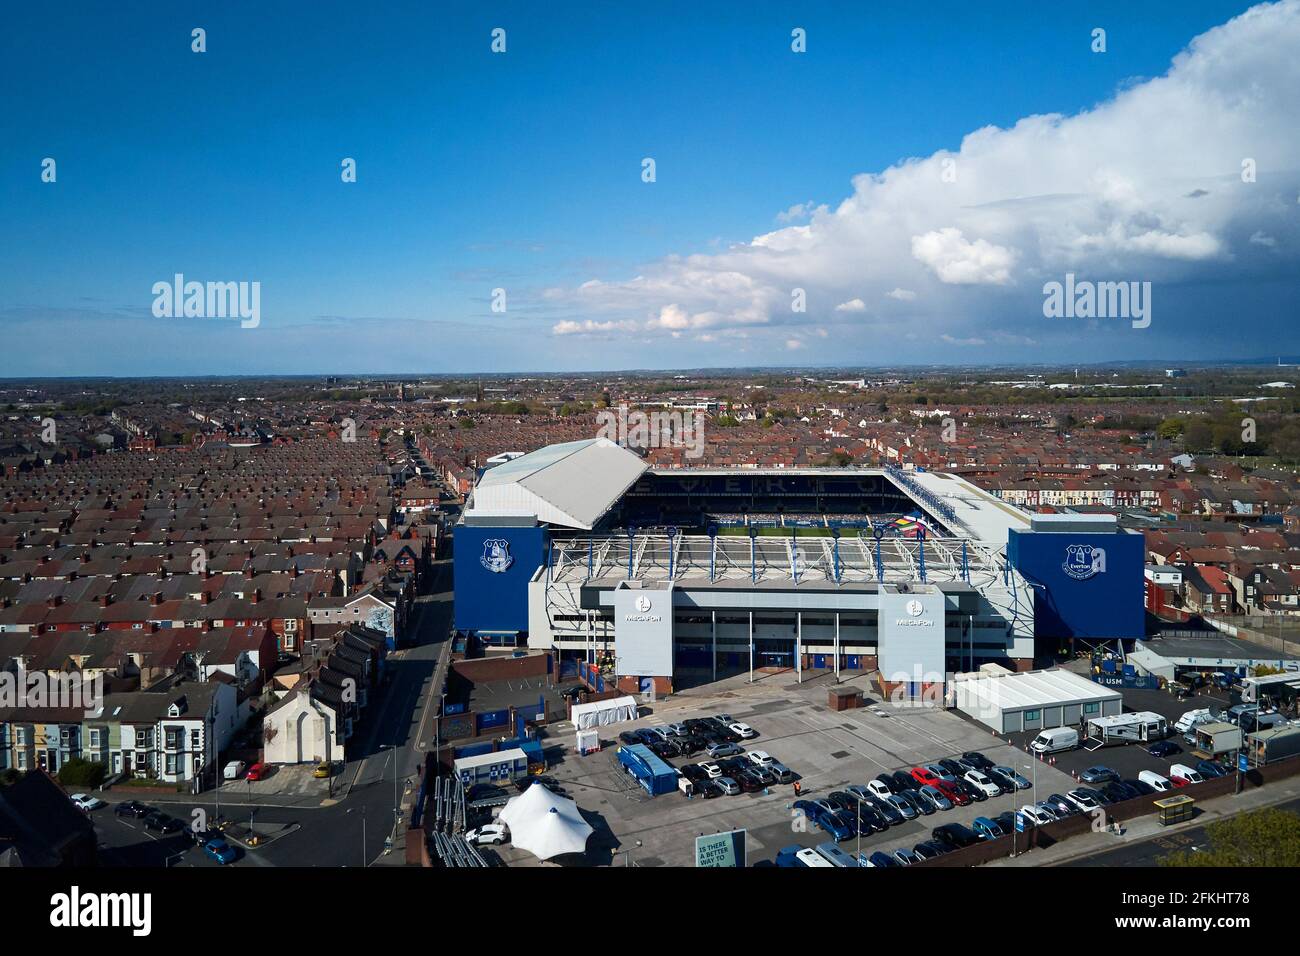 Vue aérienne du parc Goodison montrant le stade dans son cadre urbain entouré de maisons résidentielles Banque D'Images